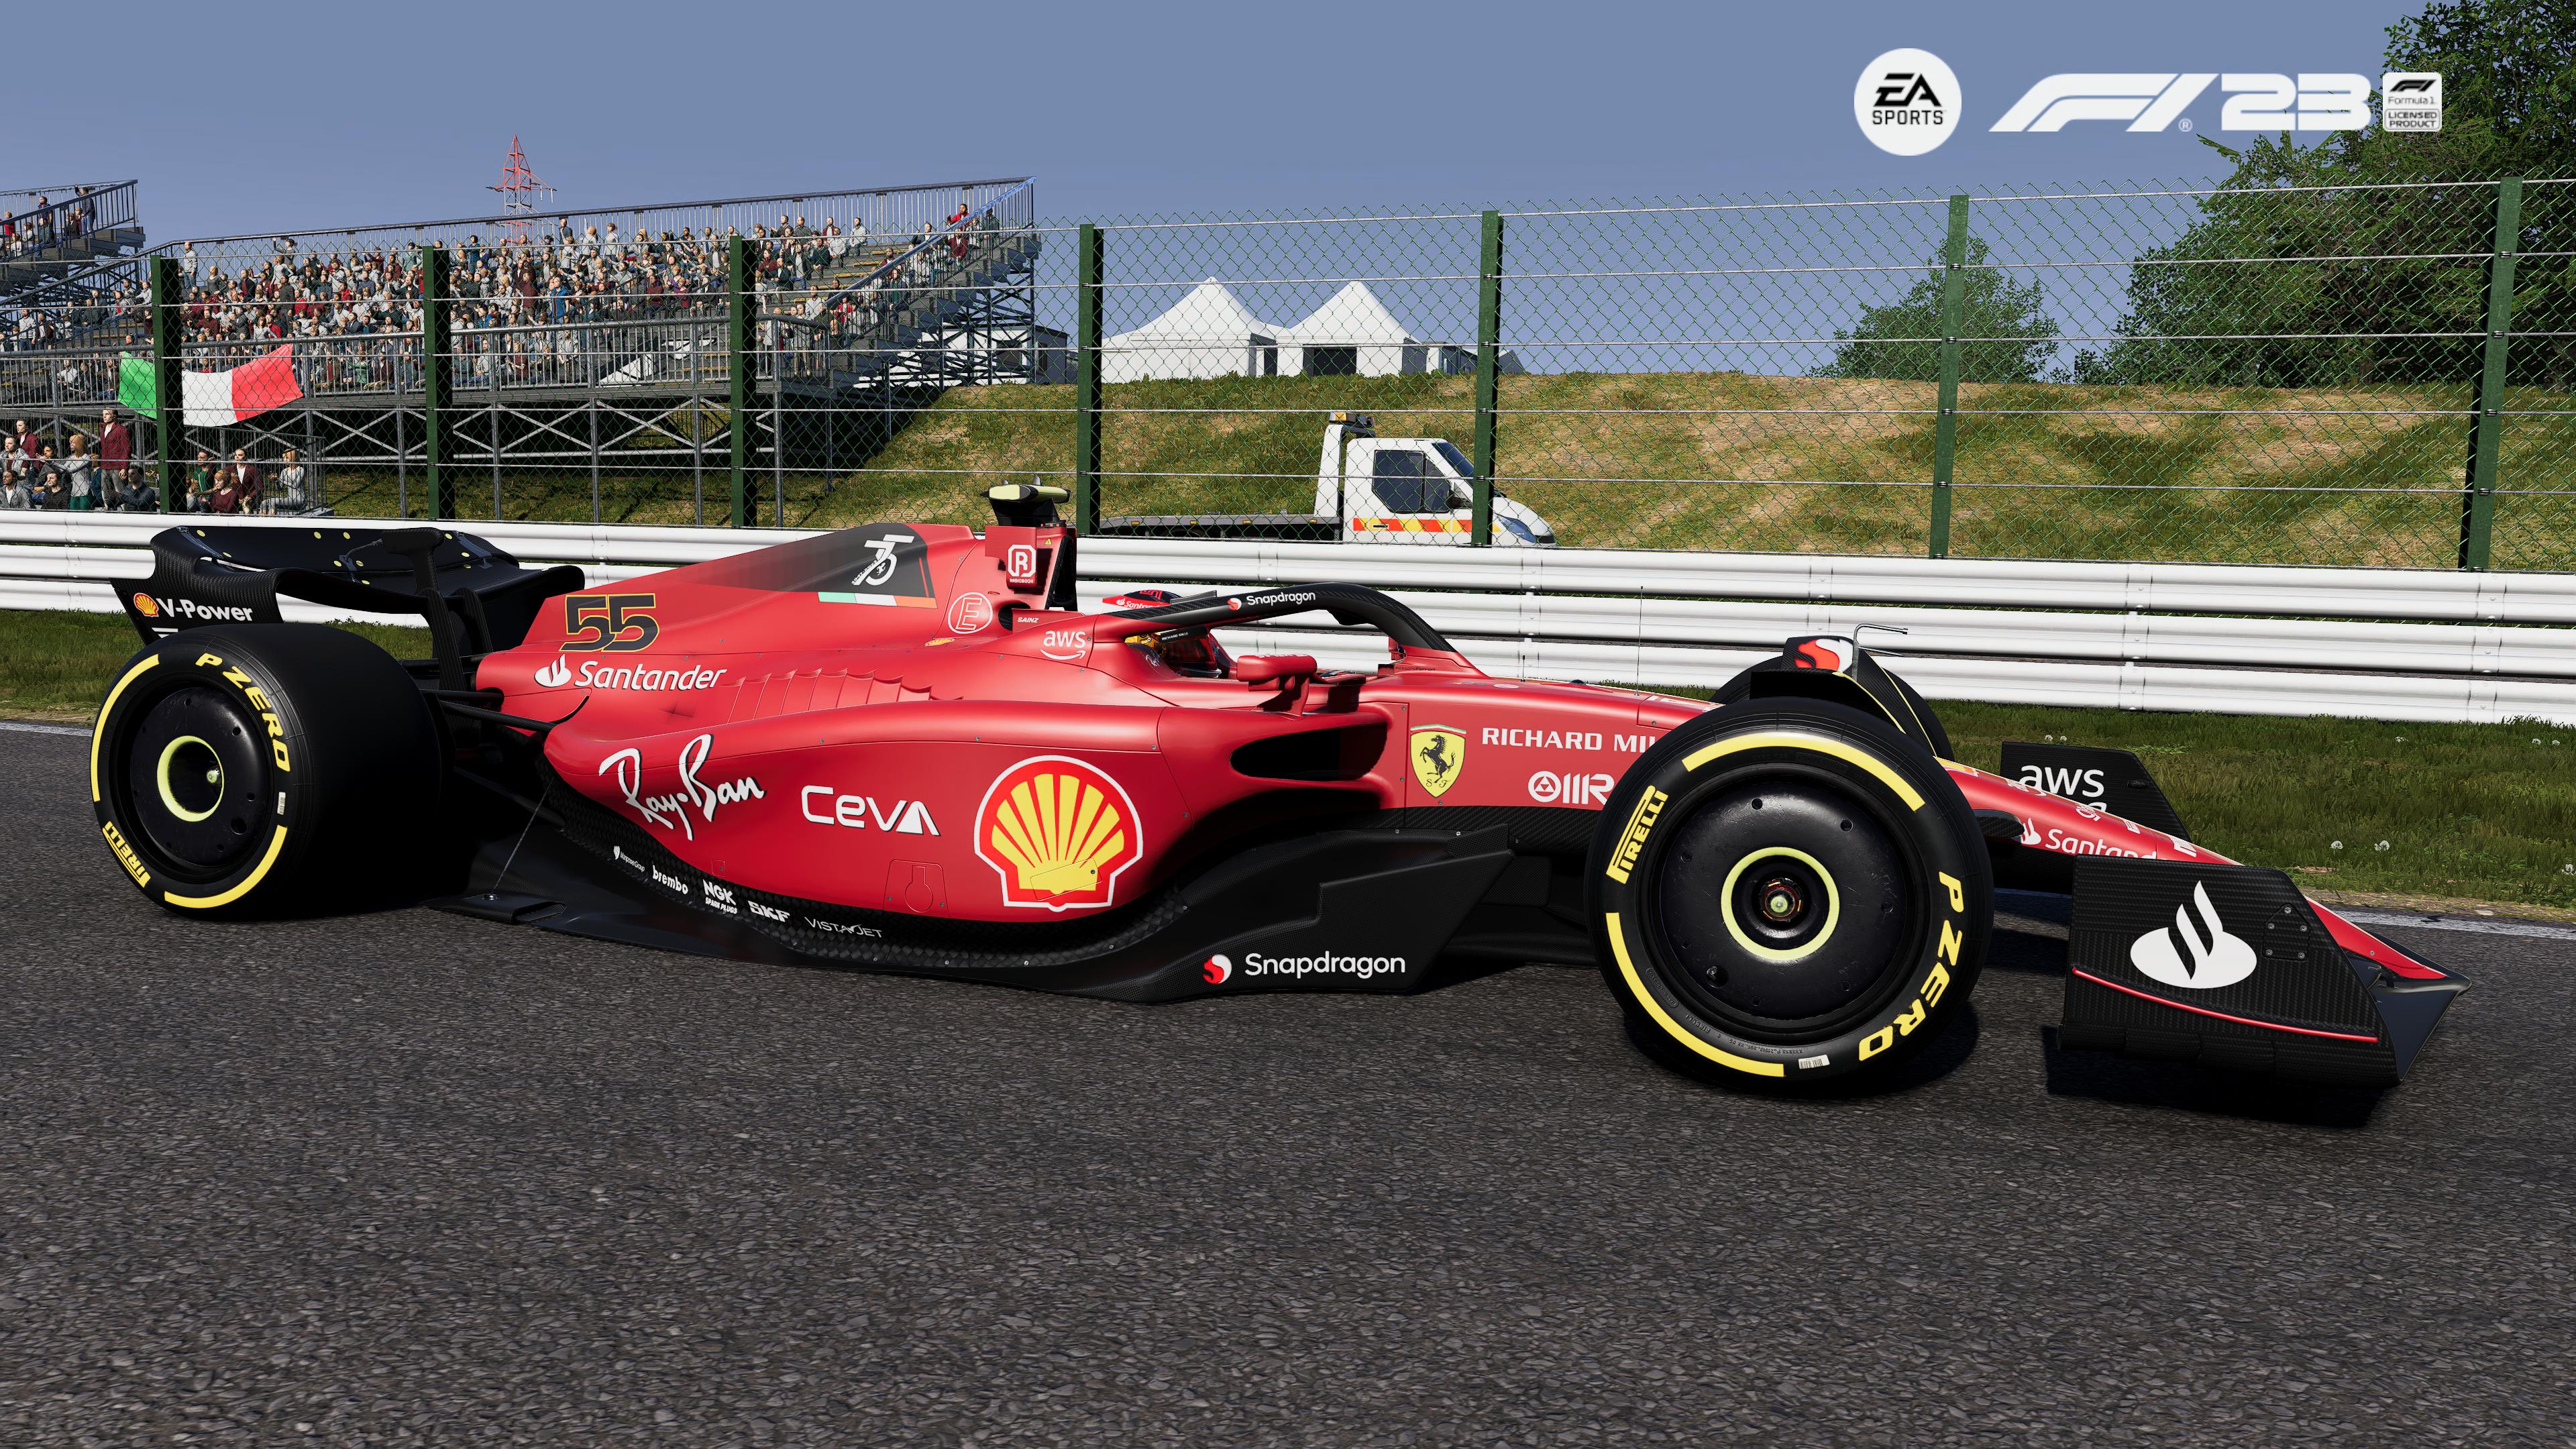 Reseña: EA Sports F1 23, el mejor juego de Fórmula 1 que han hecho 12